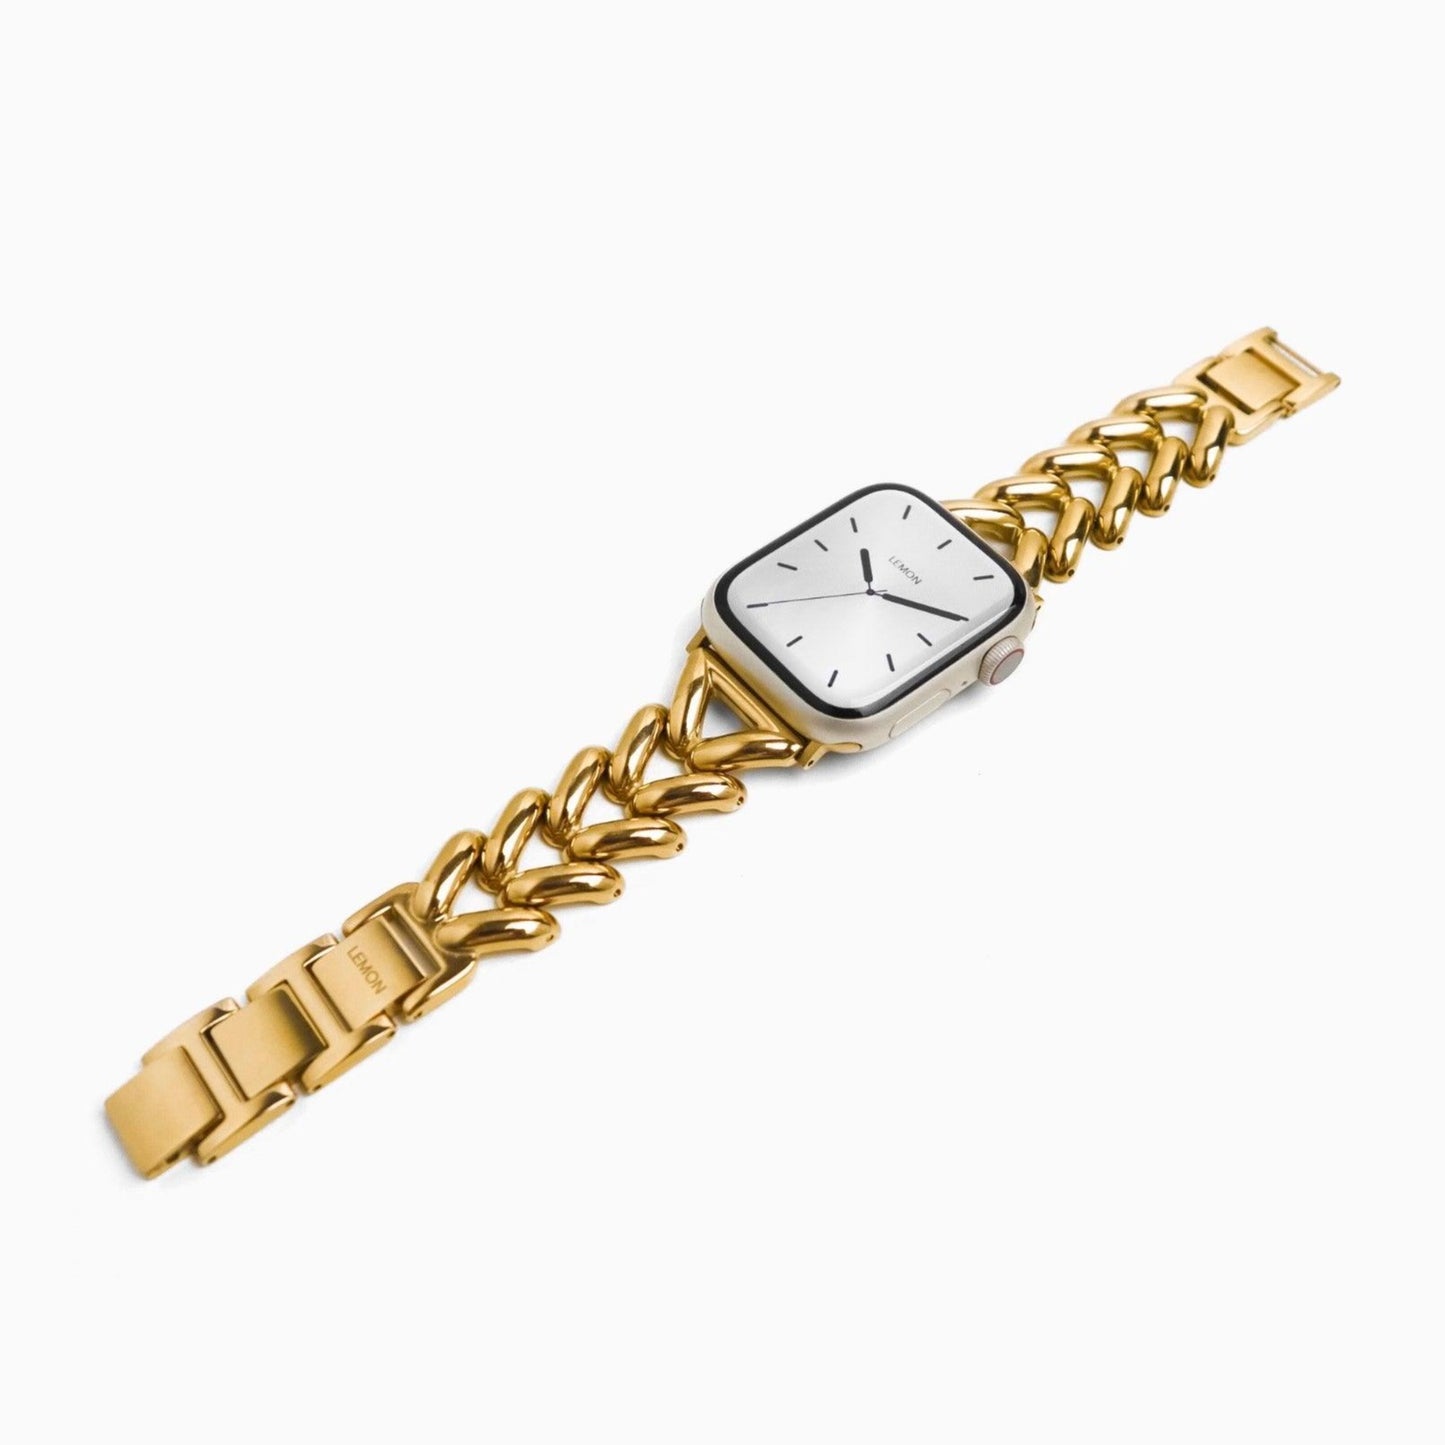 (St-Steel) Soirée Apple Watch Bracelet - 18k Gold Plated